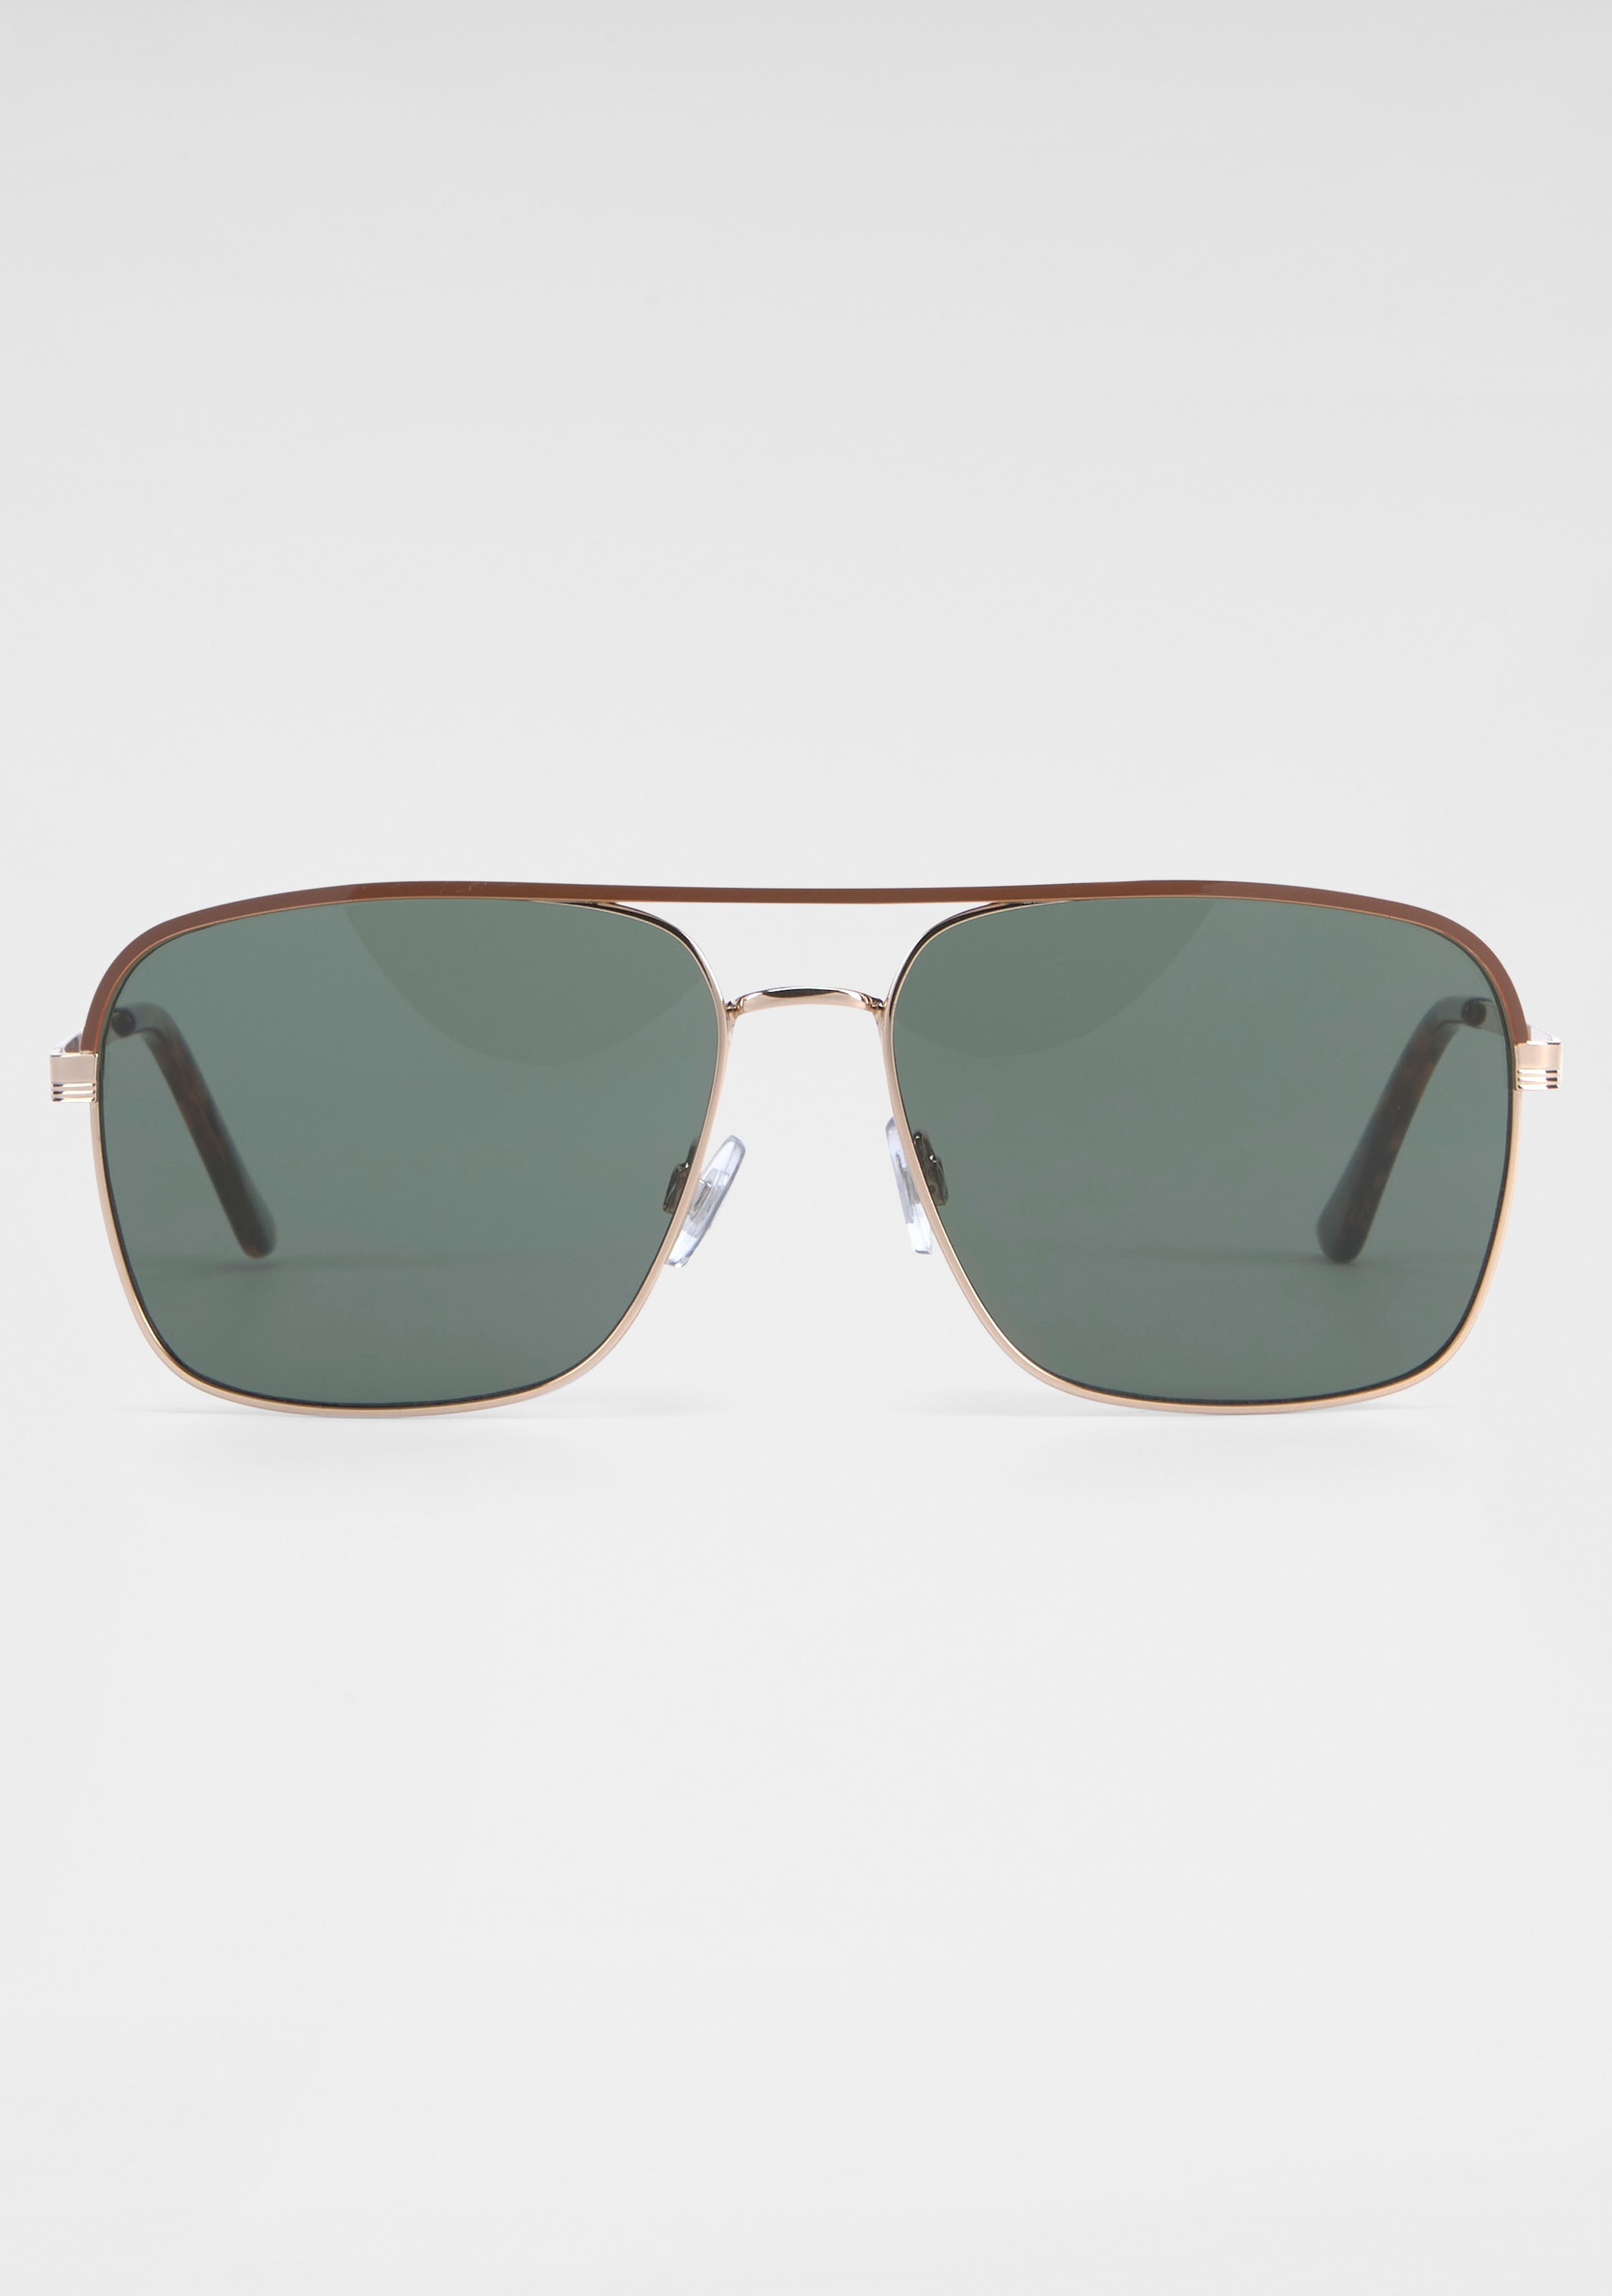 Bench. online Sonnenbrille, verspiegelten kaufen mit Gläsern